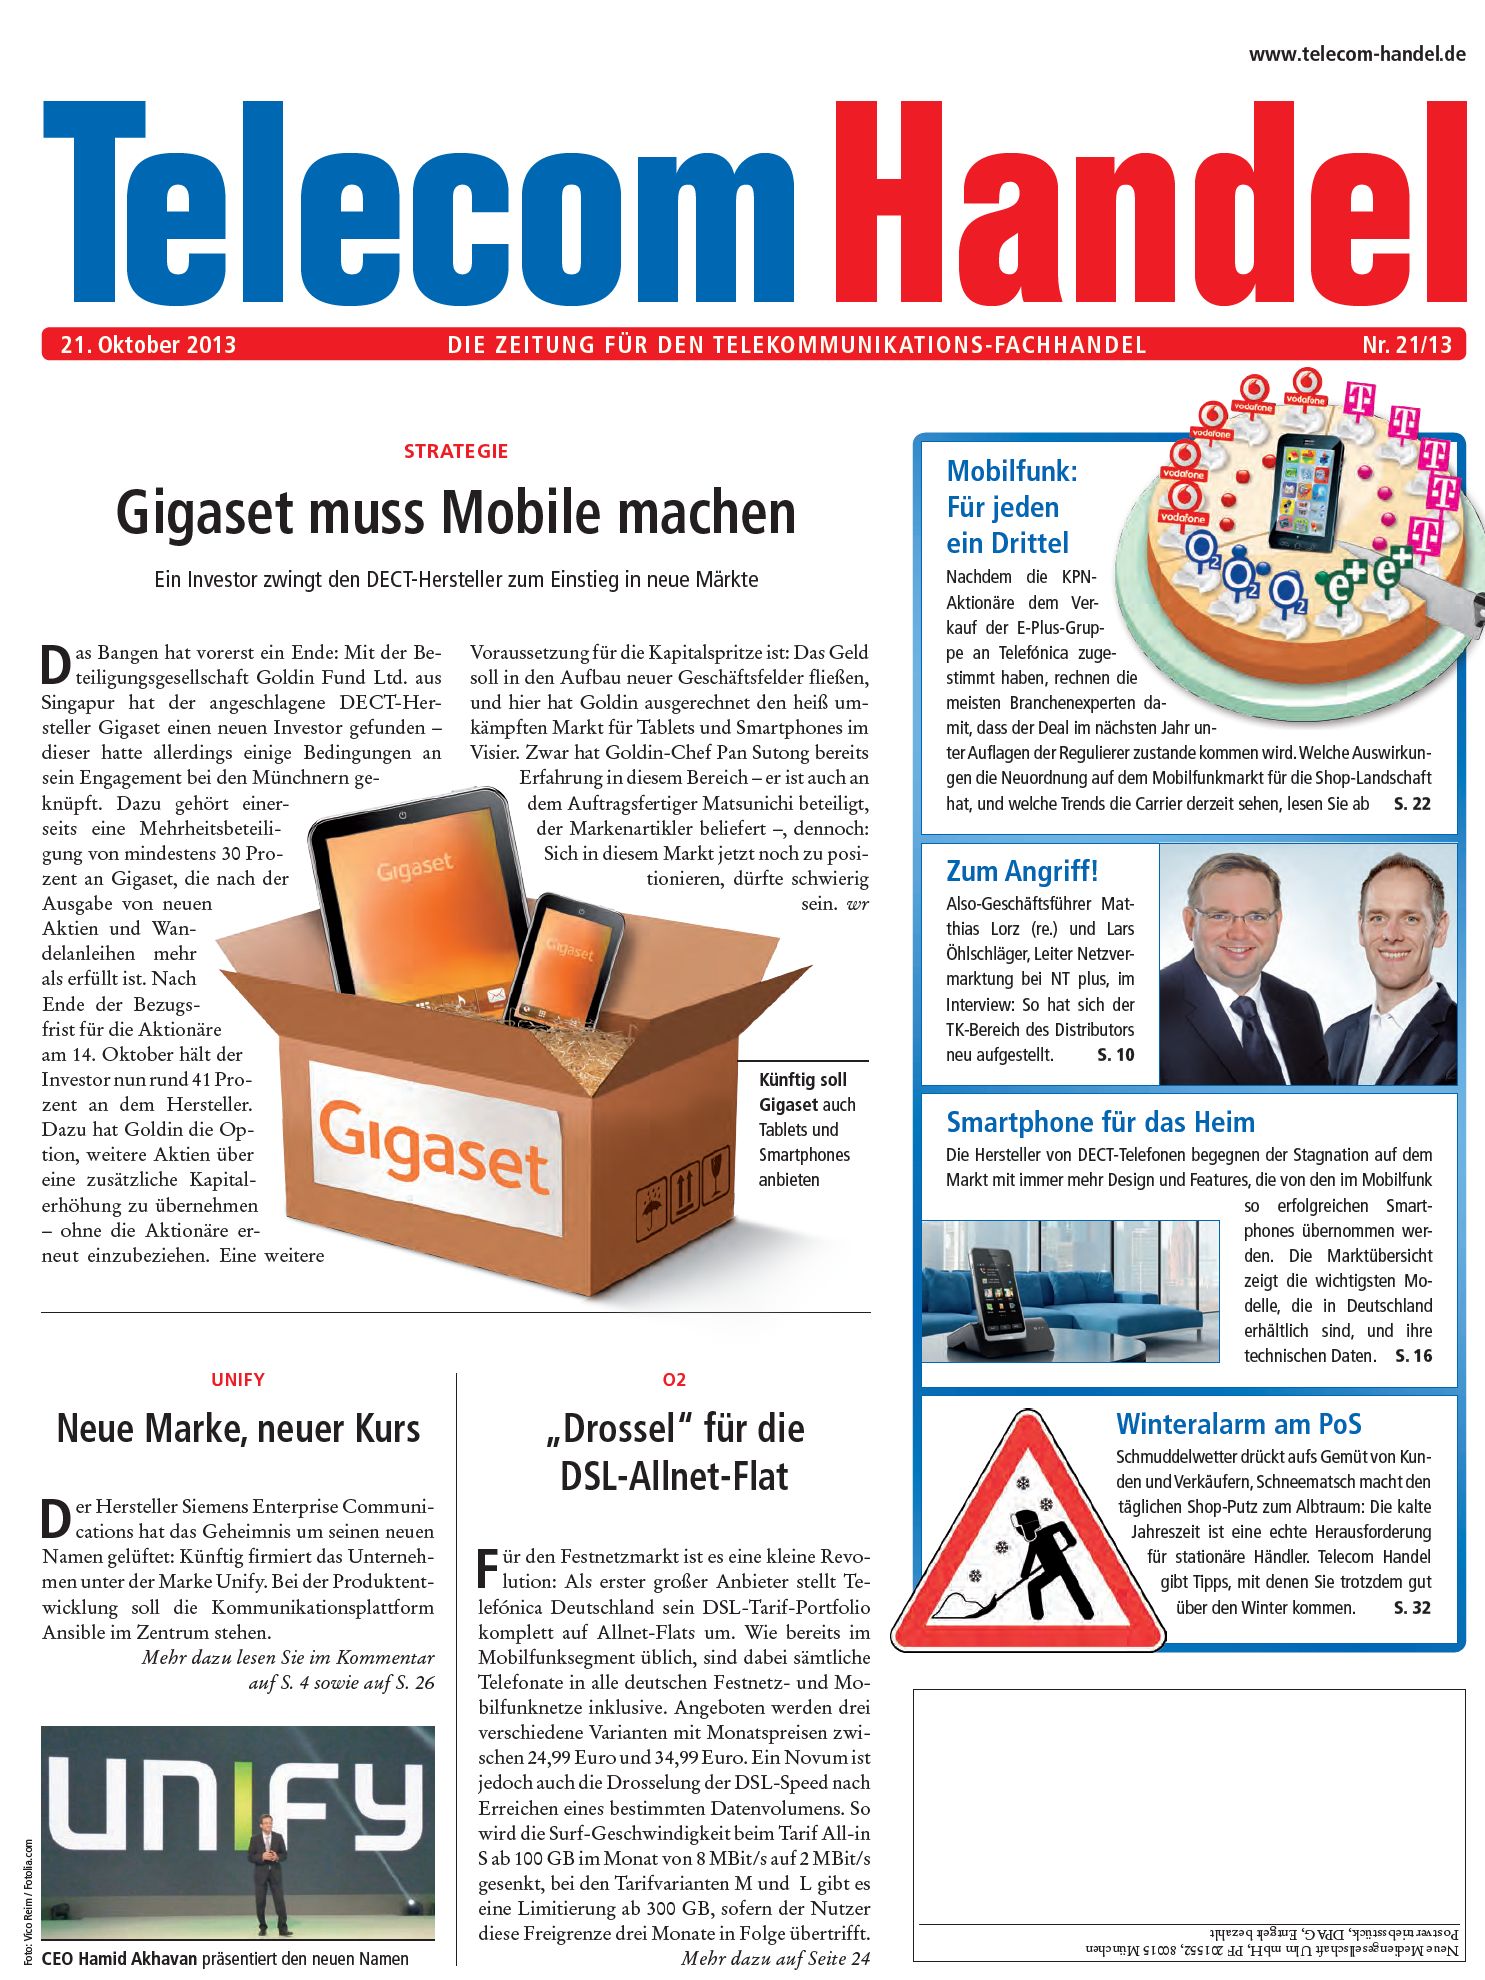 Telecom Handel Ausgabe 21/2013